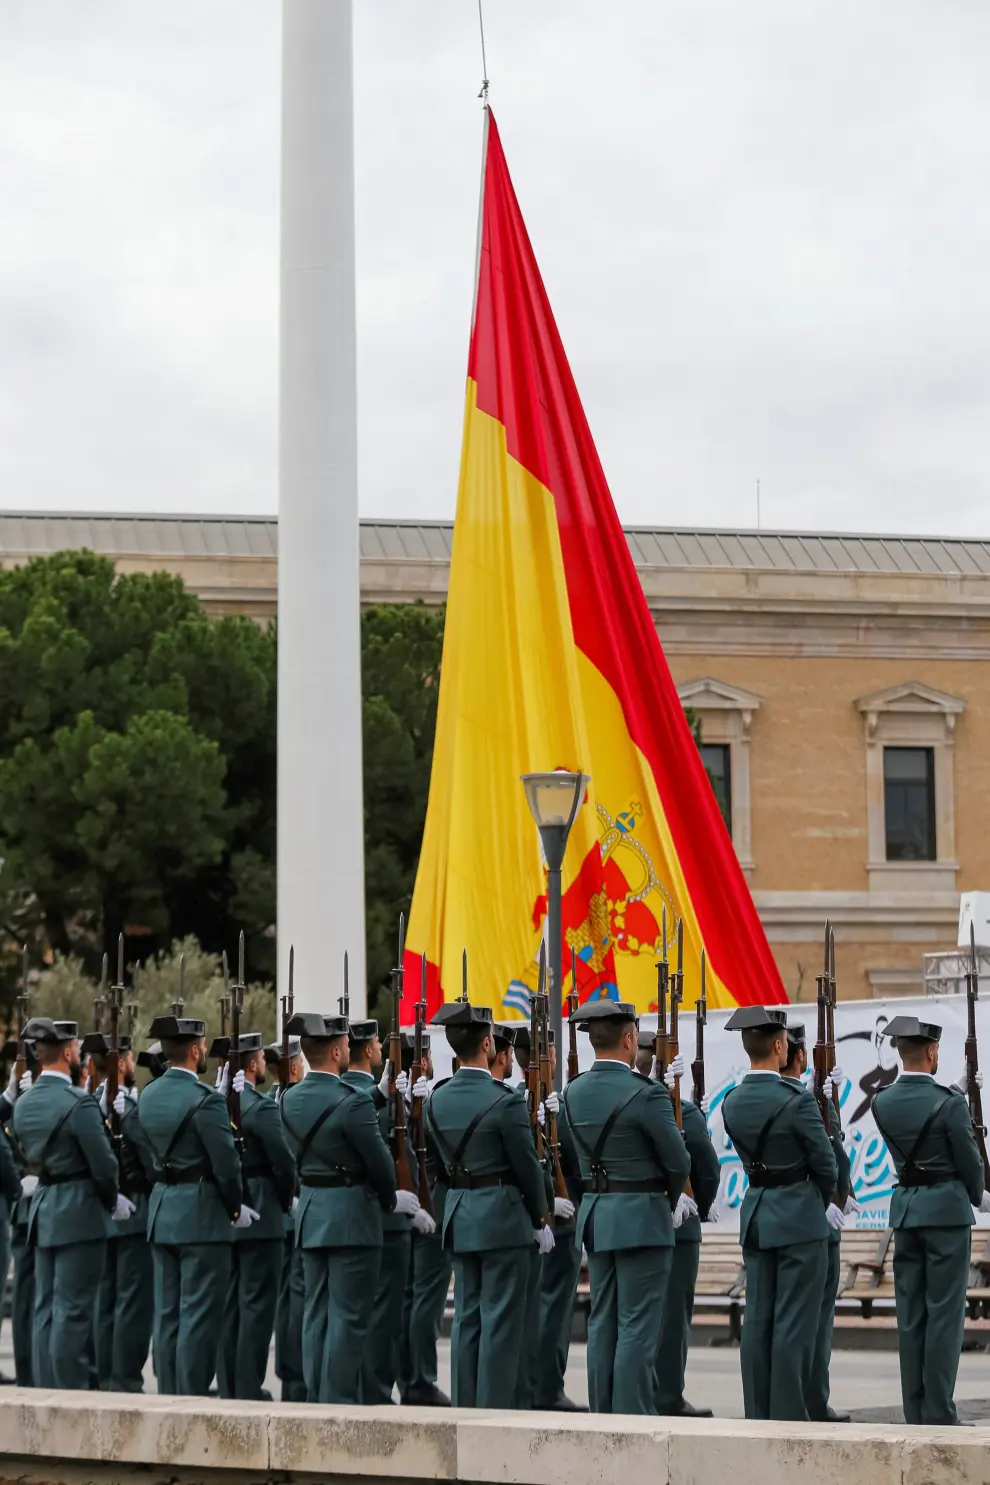 Izado de bandera en la plaza Colón de Madrid: Día de la Constitución